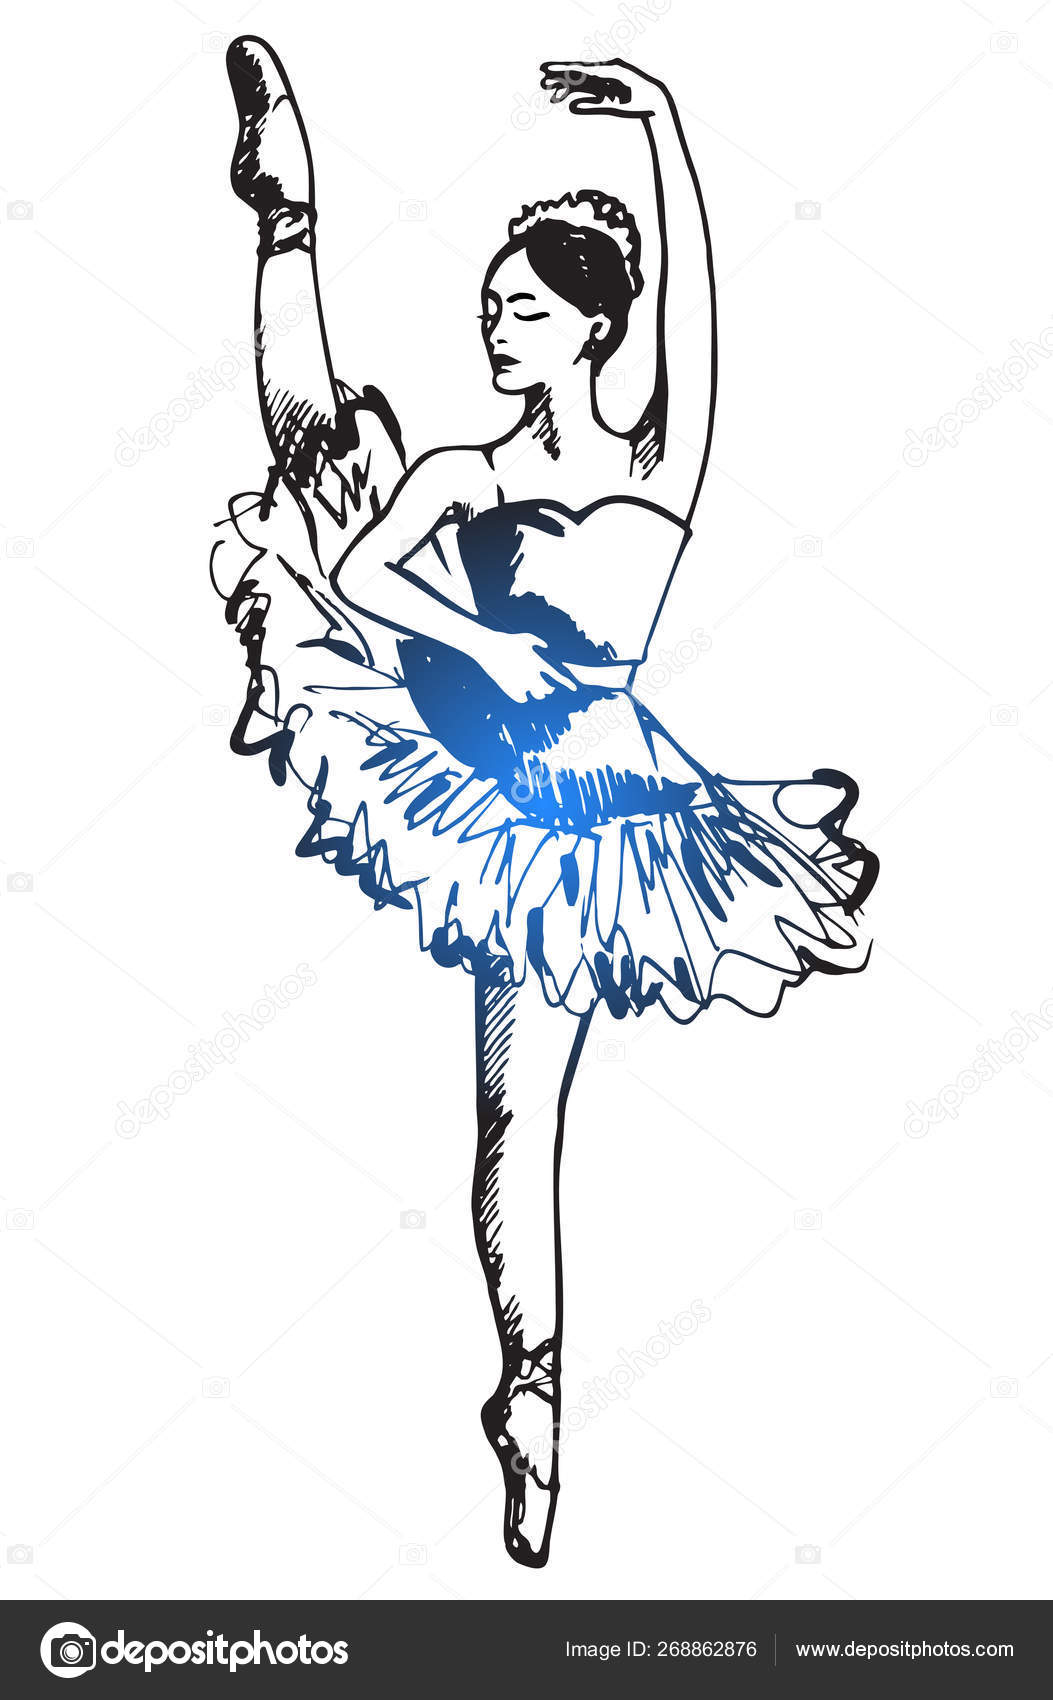 Bailarina De Ballet Mujer Color Dibujo Grabado Vector Ilustración.  Imitación De Estilo De Tablero De Rascar. Imagen Dibujada A Mano En Blanco  Y Negro. Ilustraciones svg, vectoriales, clip art vectorizado libre de